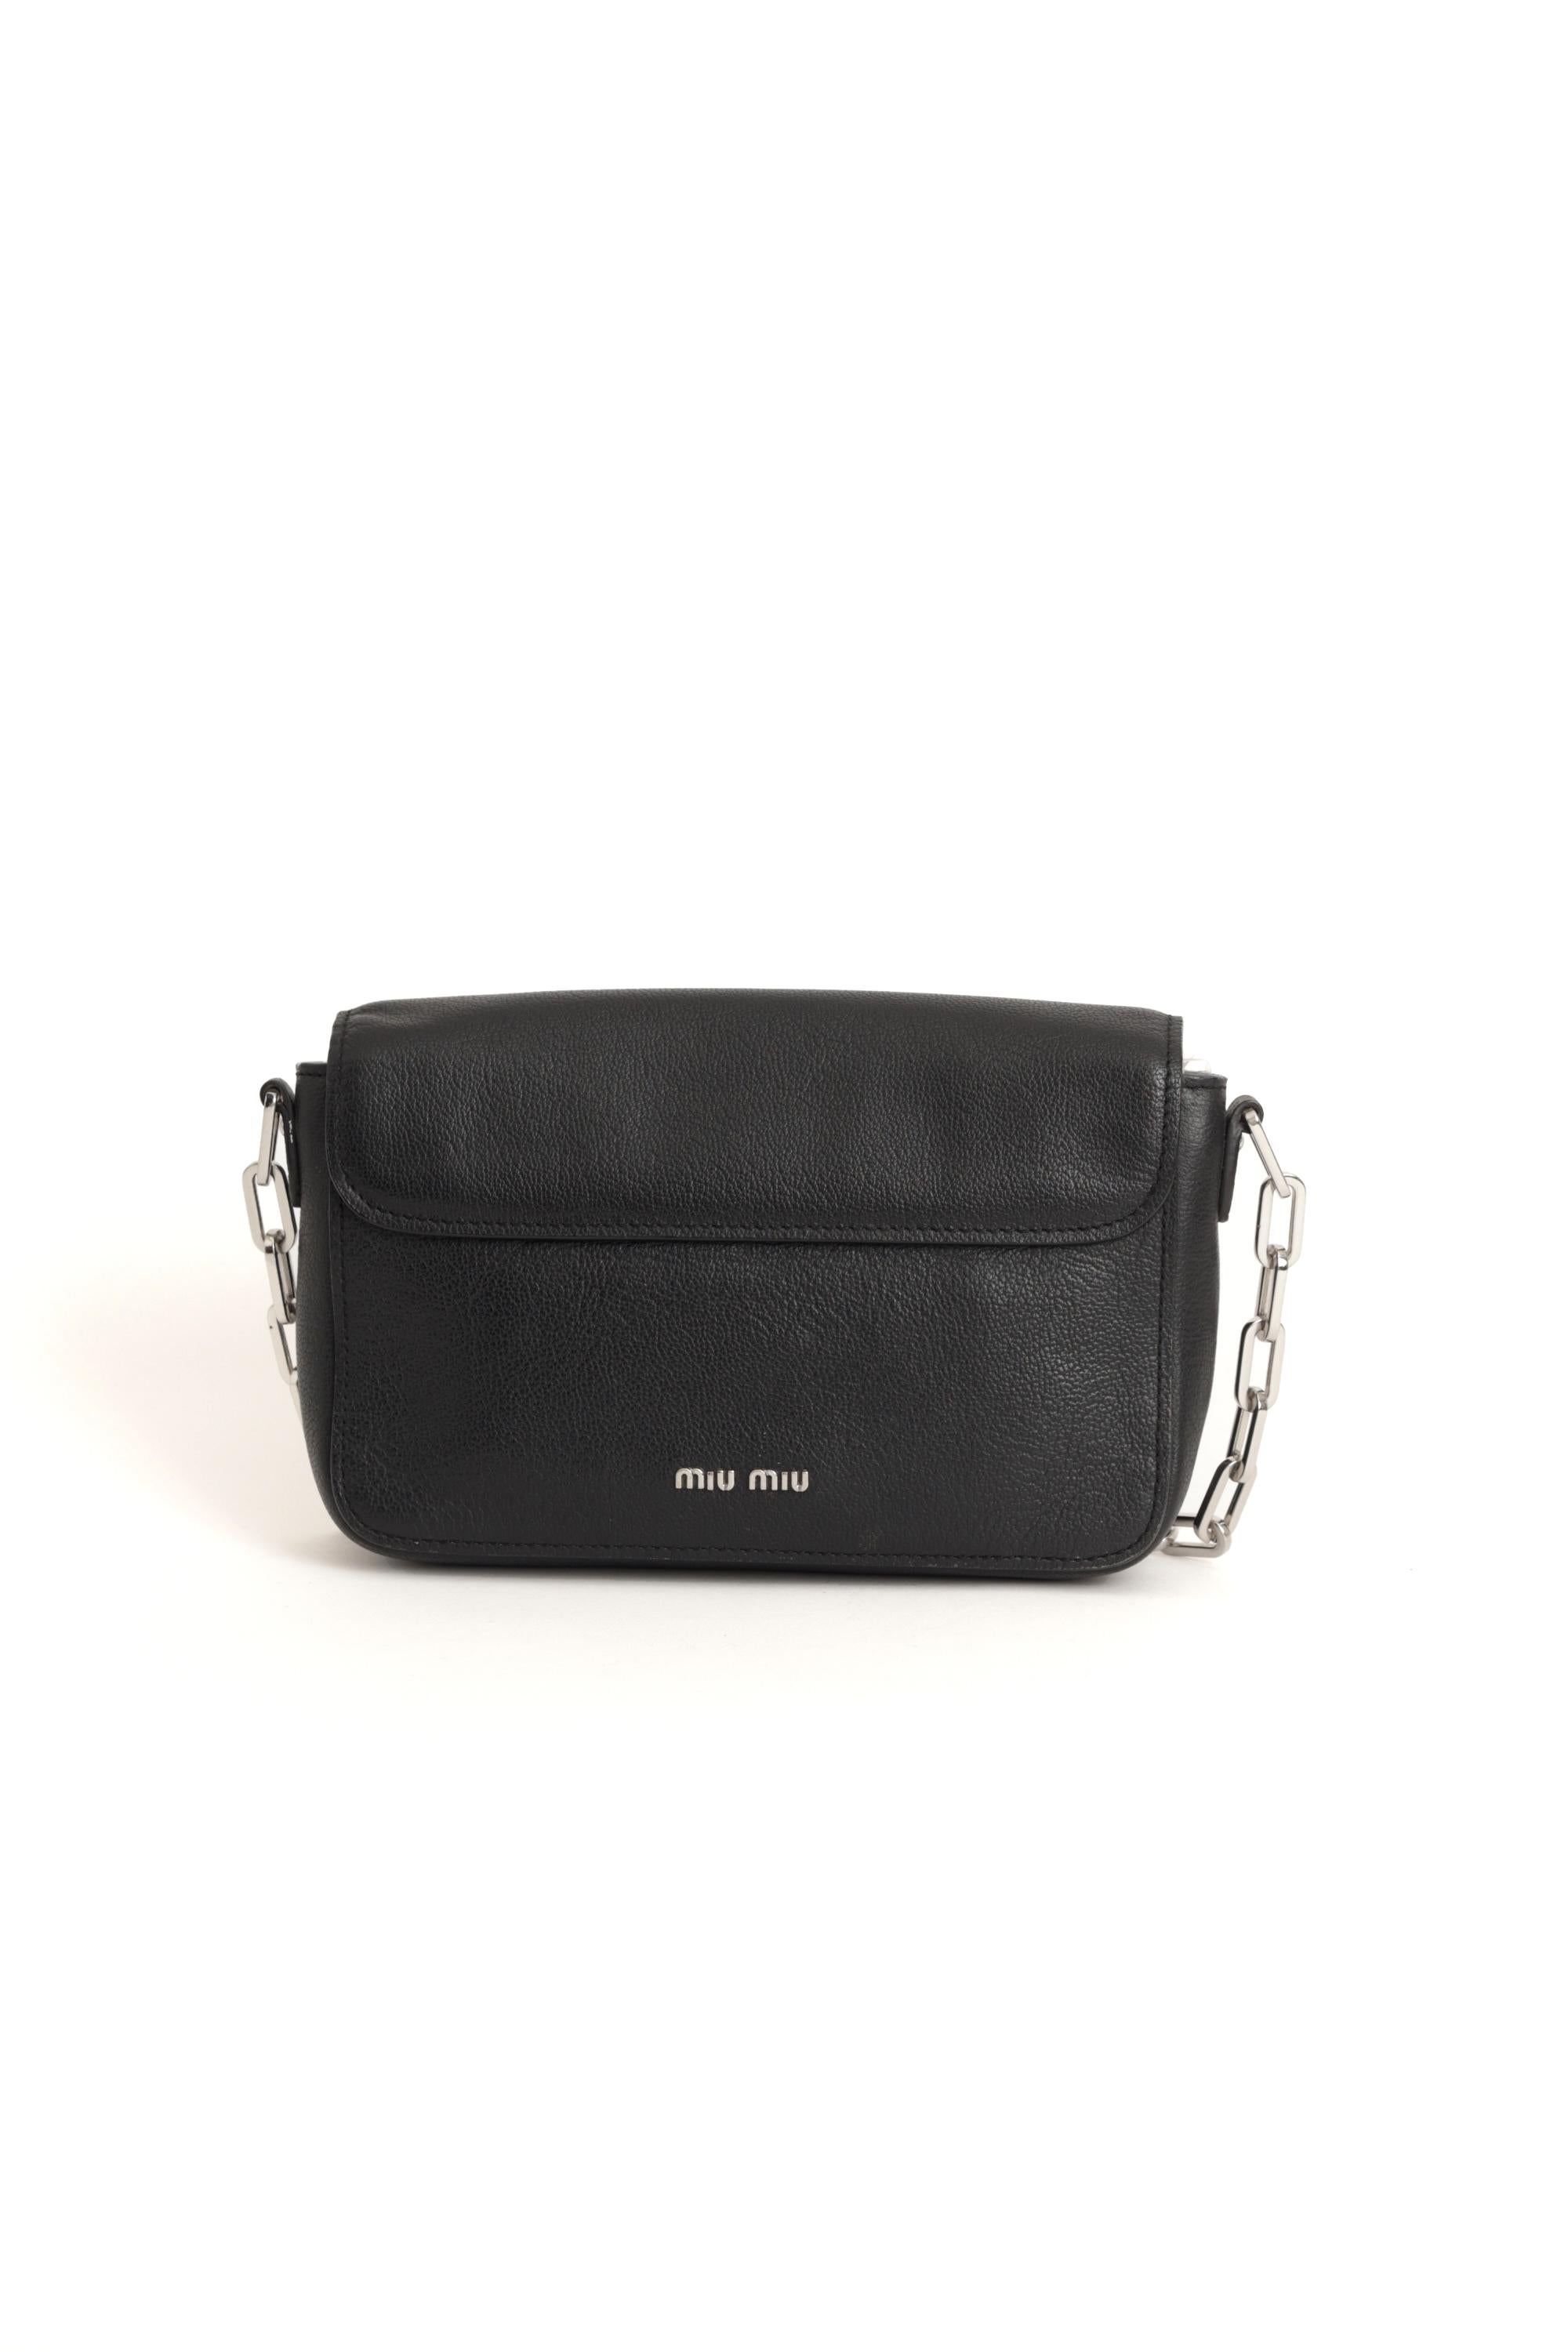 Nous sommes heureux de vous présenter ce sac transversal en cuir noir à rabat unique de Miu Miu 2000. Il est doté d'une bandoulière en chaîne argentée, de deux compartiments, d'un fermoir à poussoir et d'une poche intérieure zippée. En parfait état.